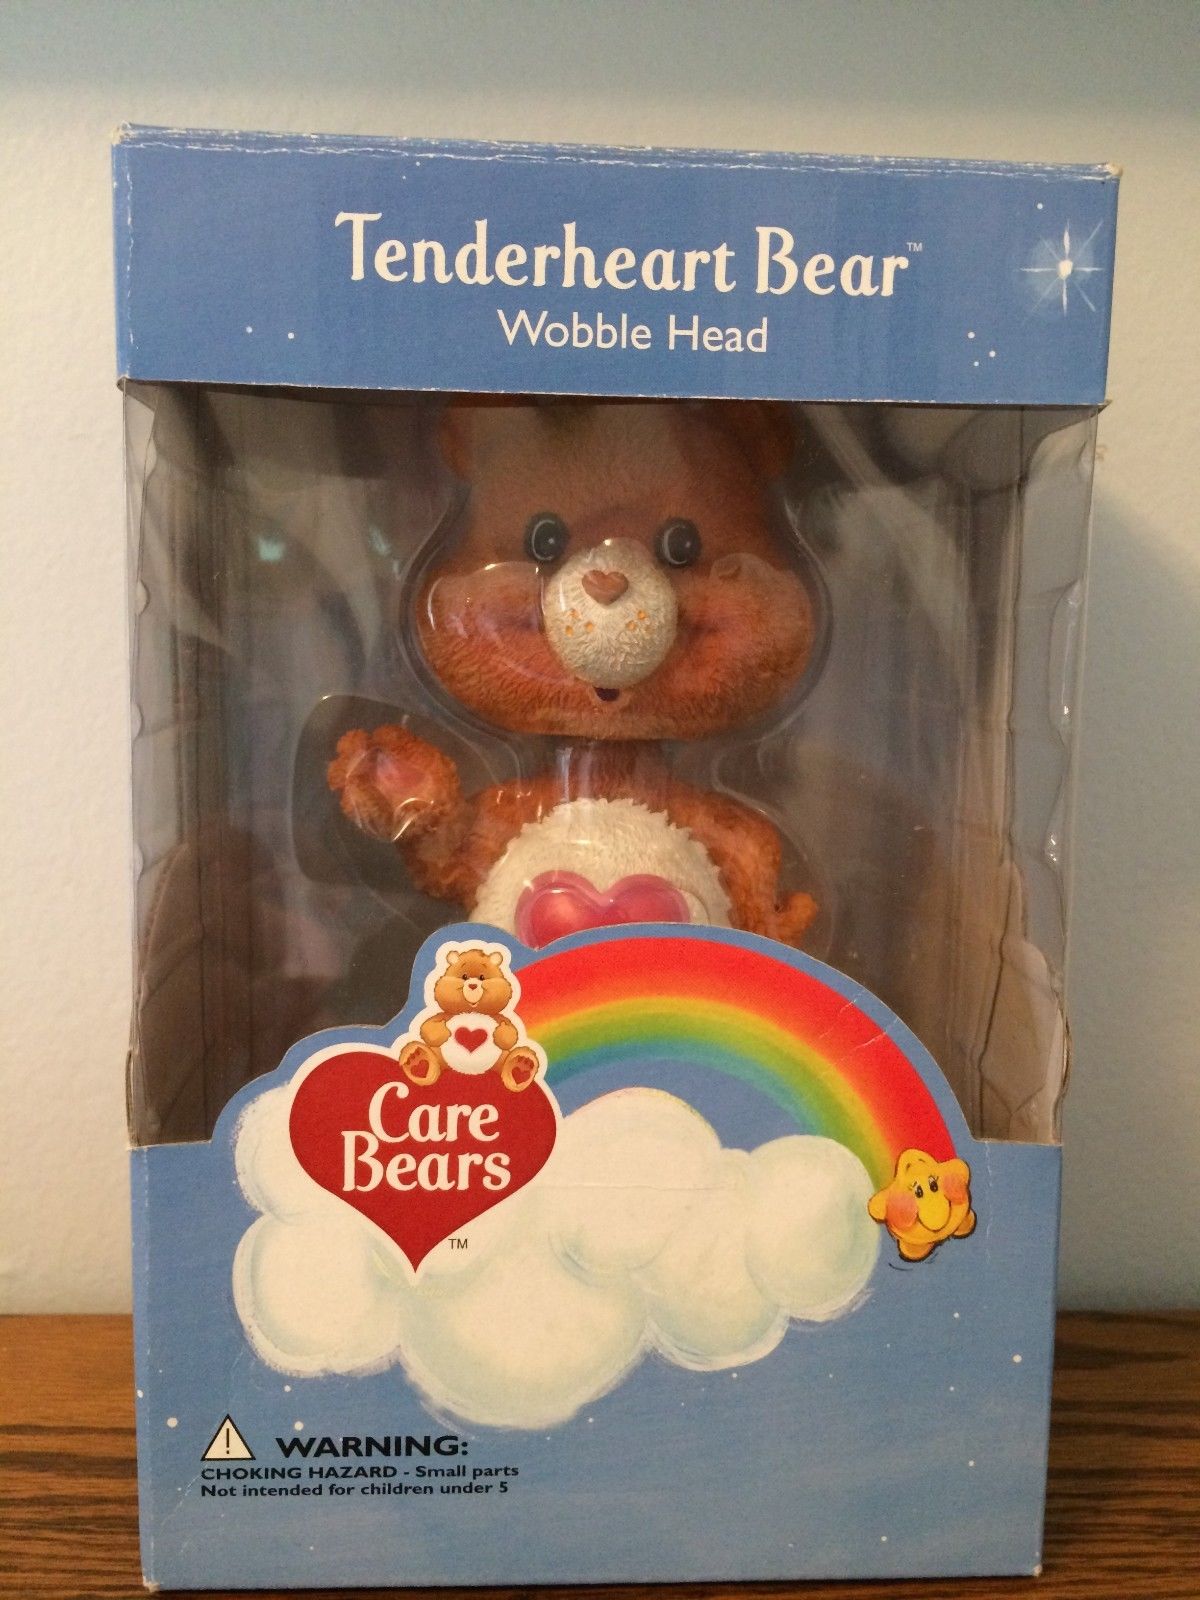 Care Bears Tenderheart Bear Wobble Head - New in Packaging 